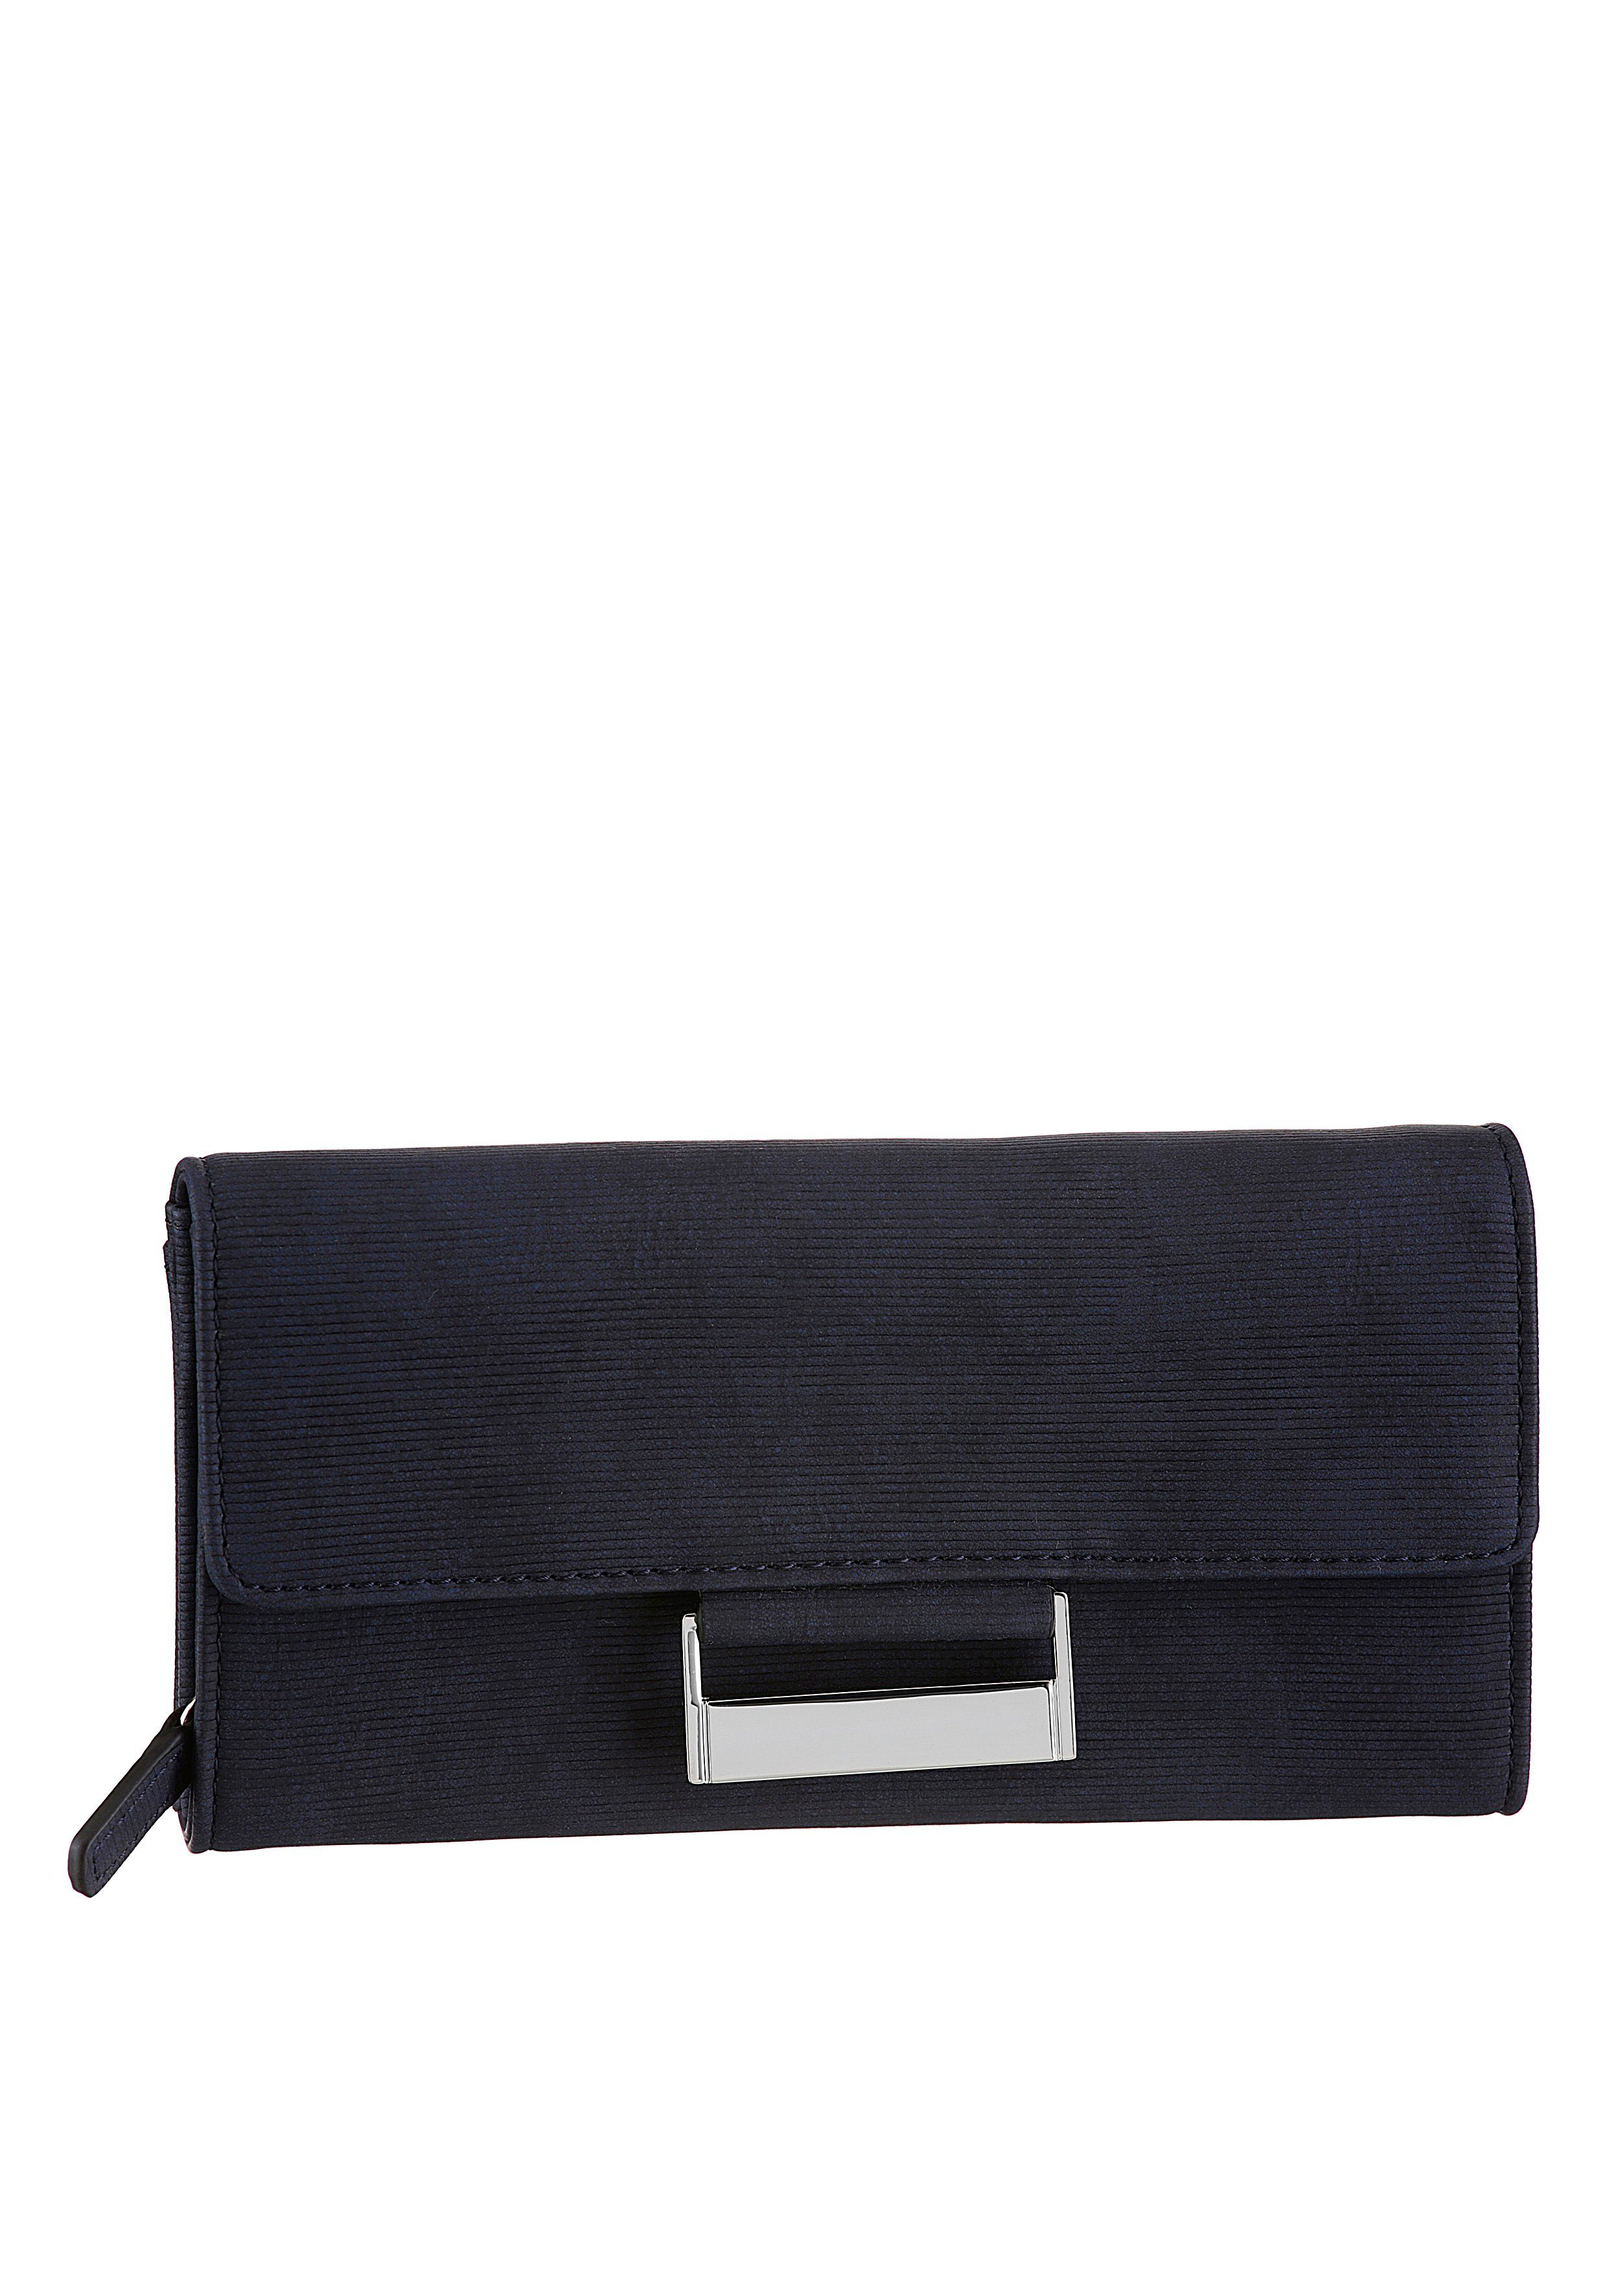 mit different GERRY purse lh9f, praktischer Geldbörse Einteilung dunkelblau Bags be WEBER